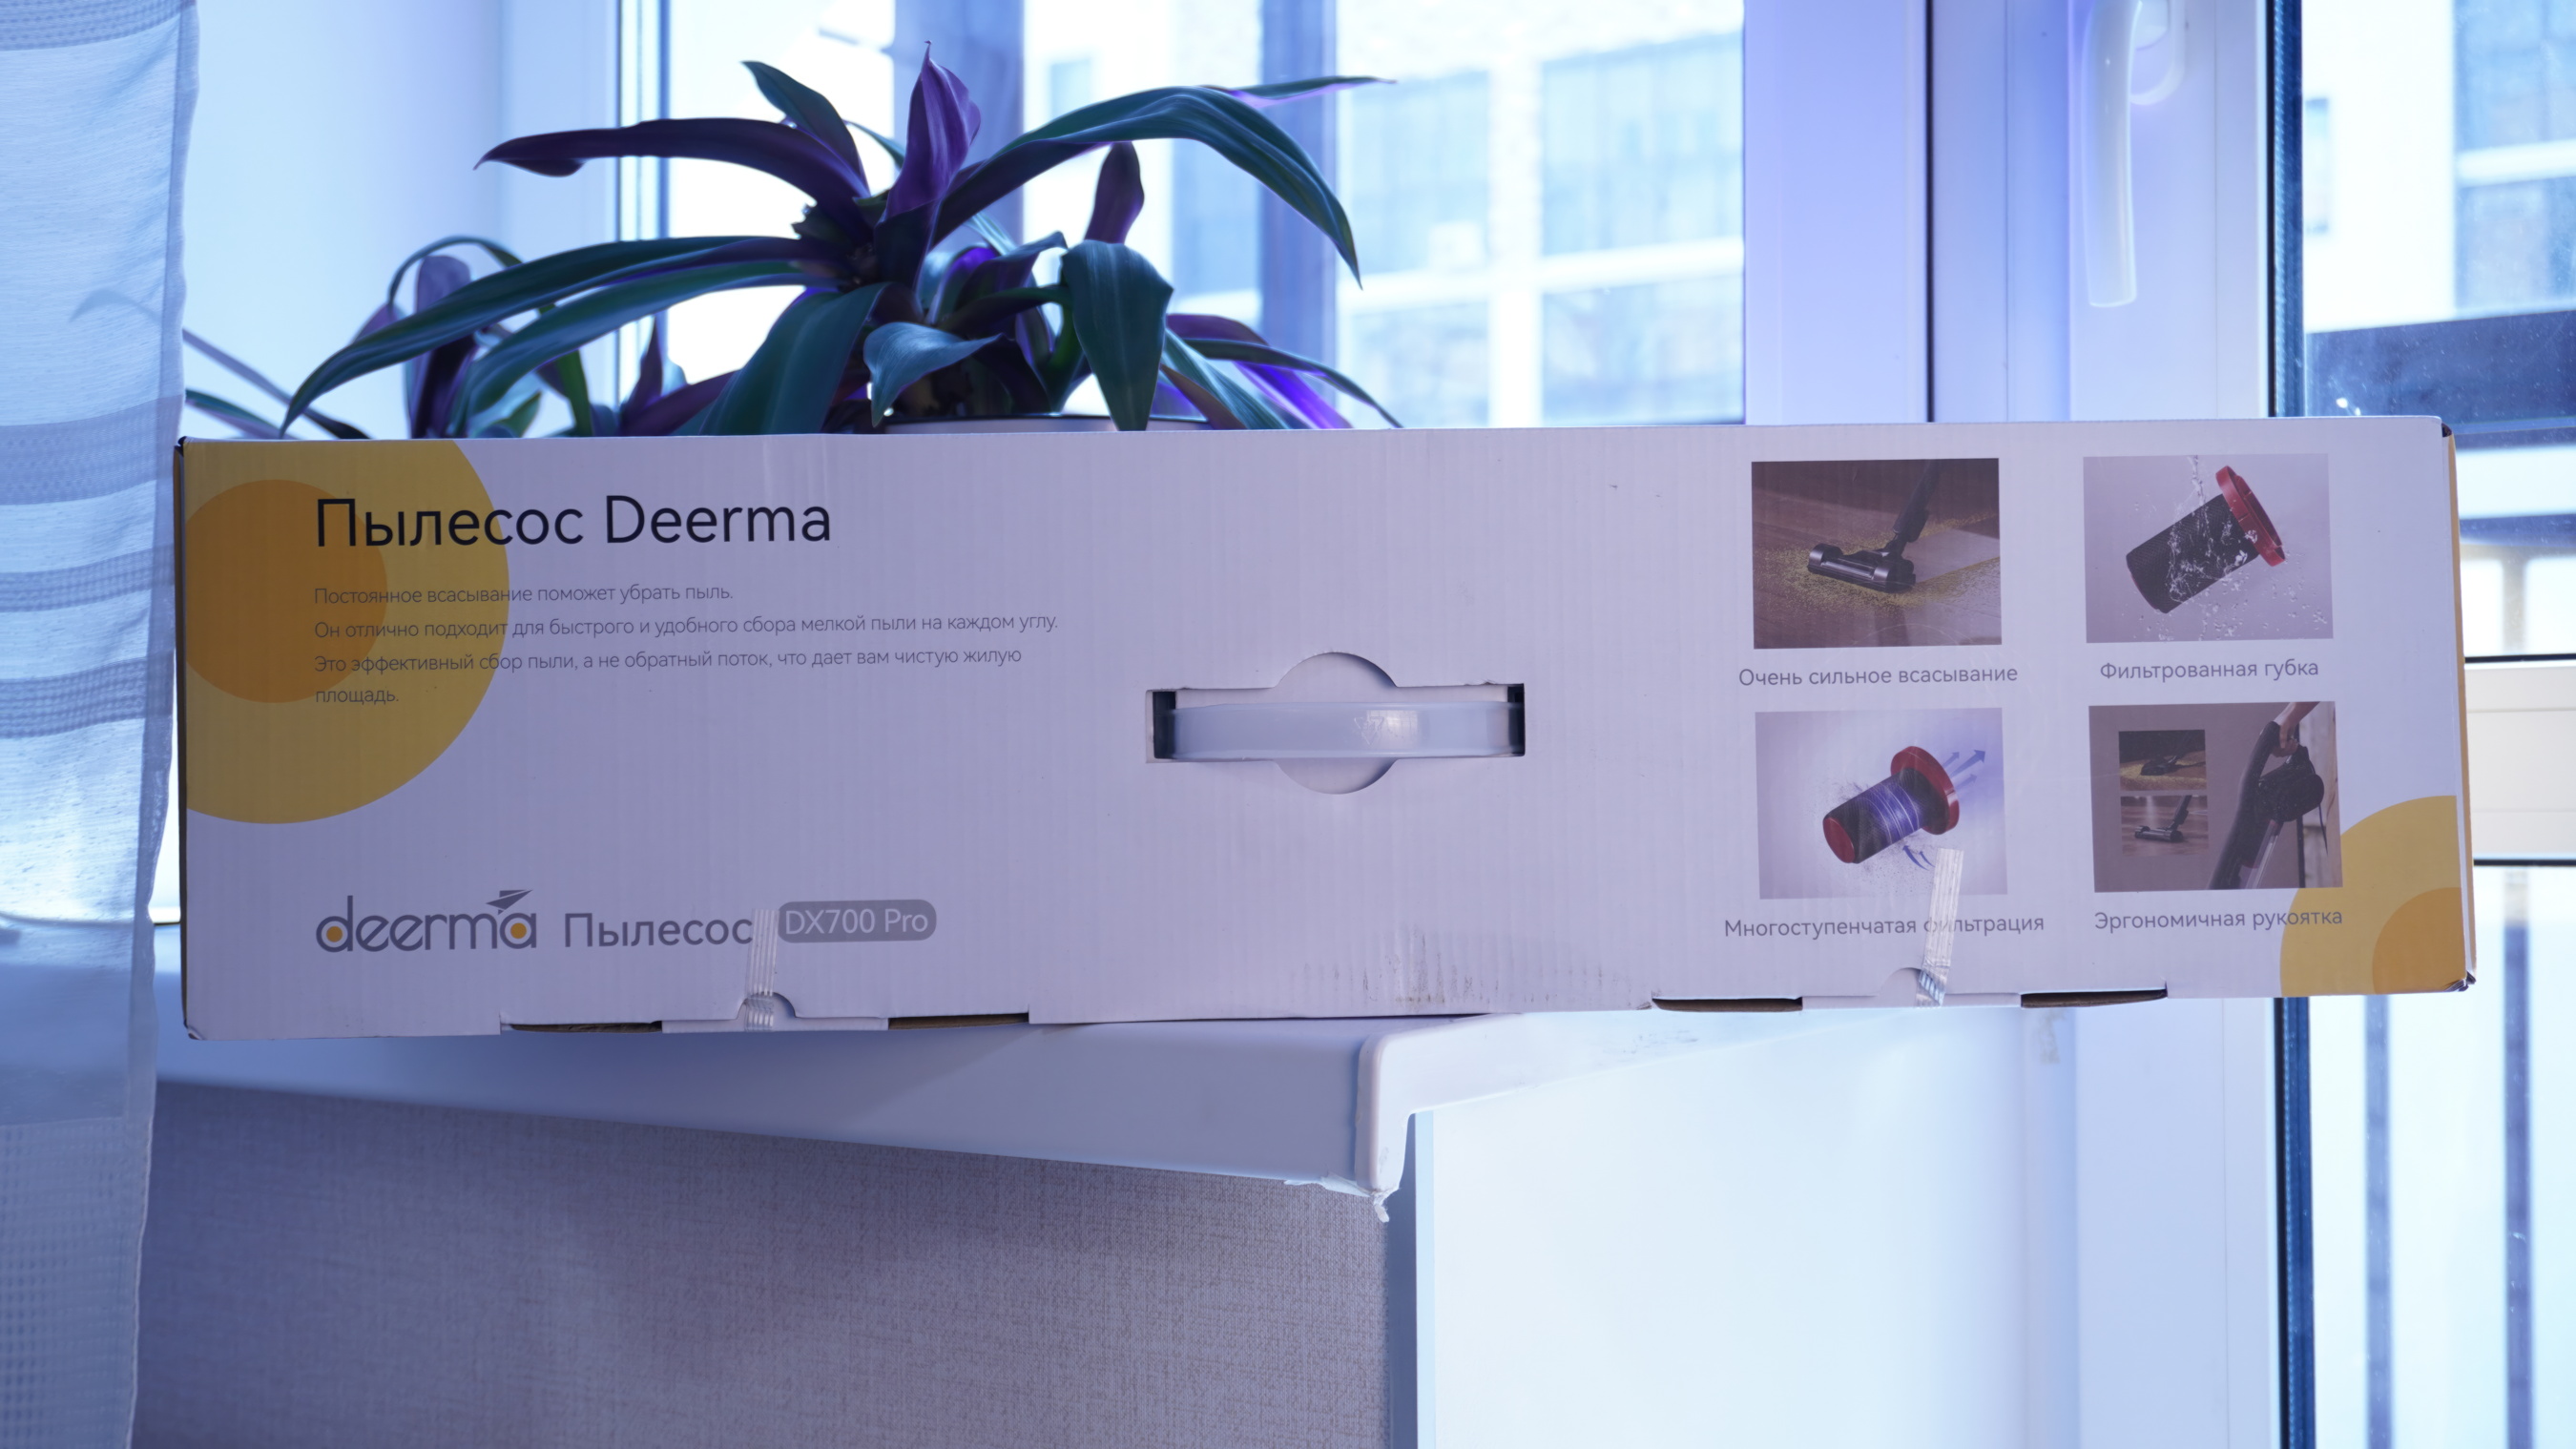 Deerma dx700 обзоры. Deerma dx700 Pro турбощетки.